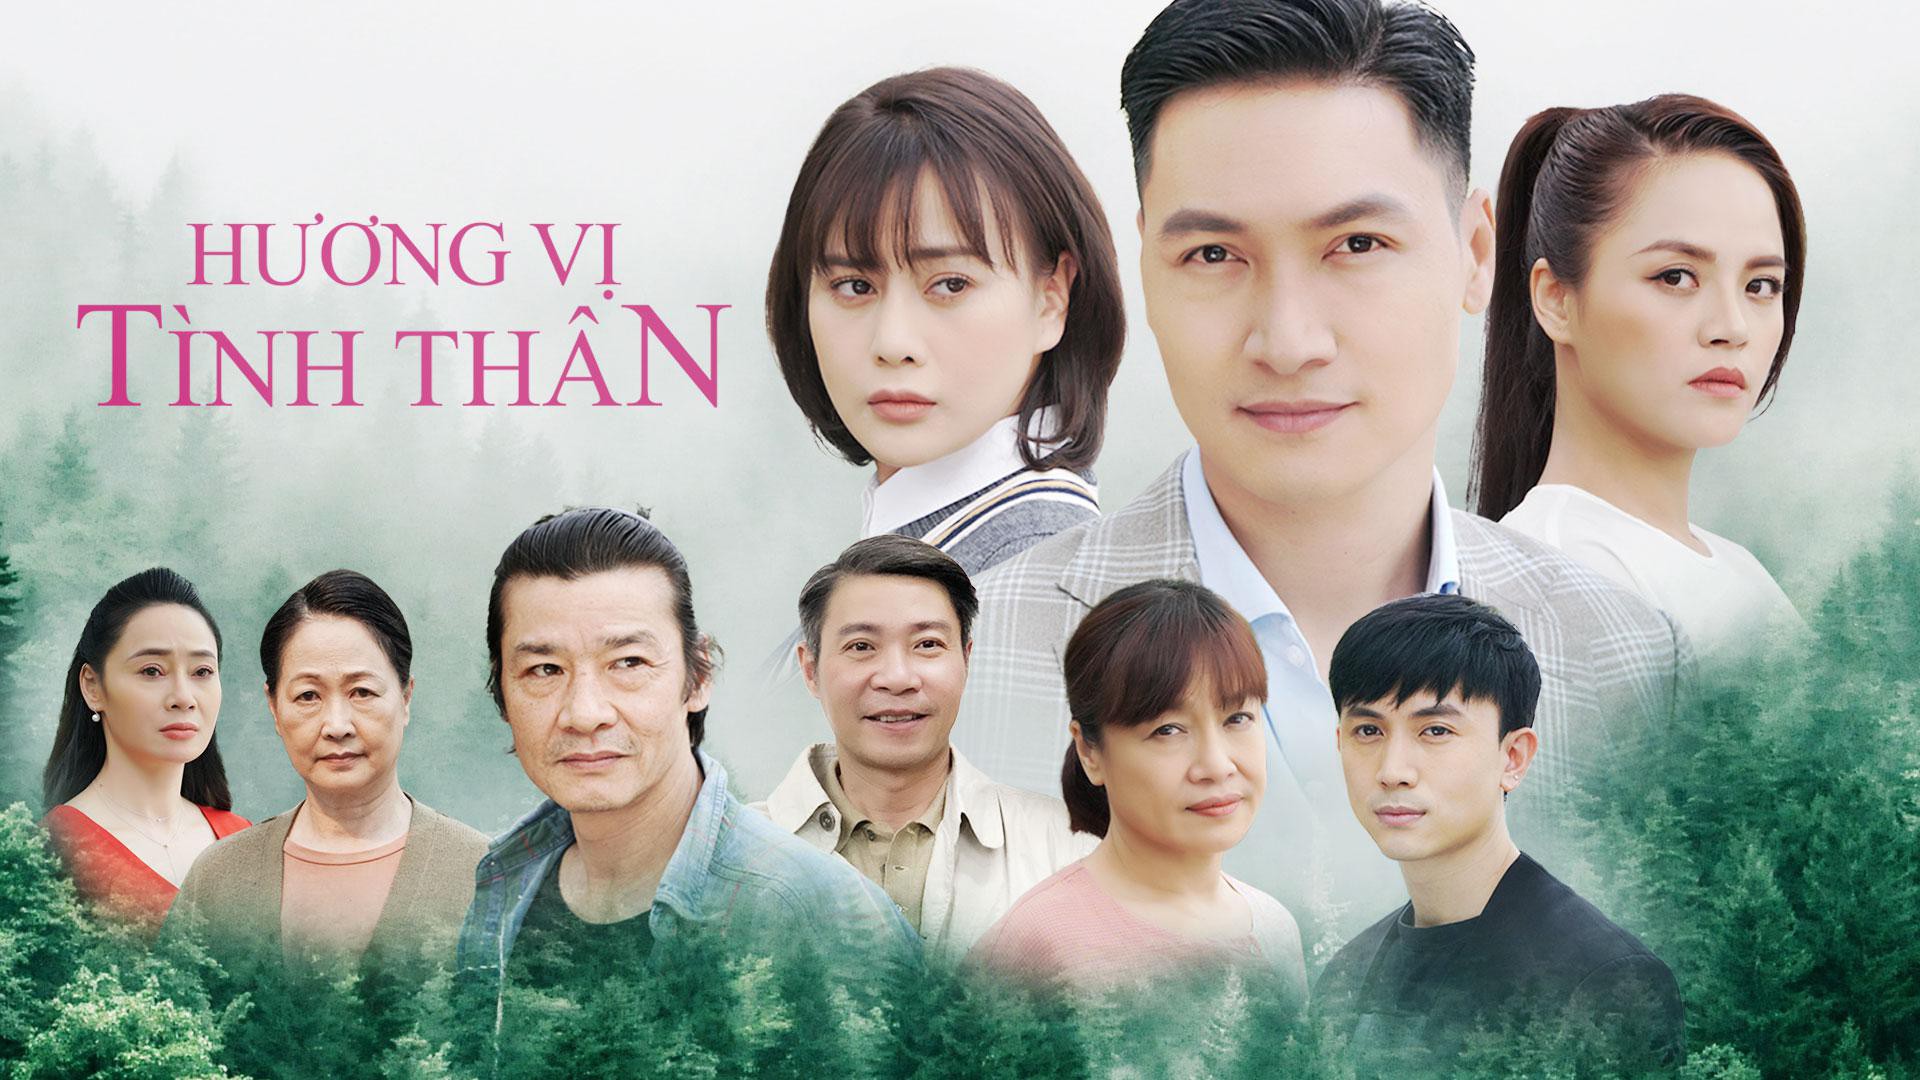 Hương Vị Tình Thân xứng đáng là bộ phim truyền hình Việt hot nhất nửa đầu năm 2021